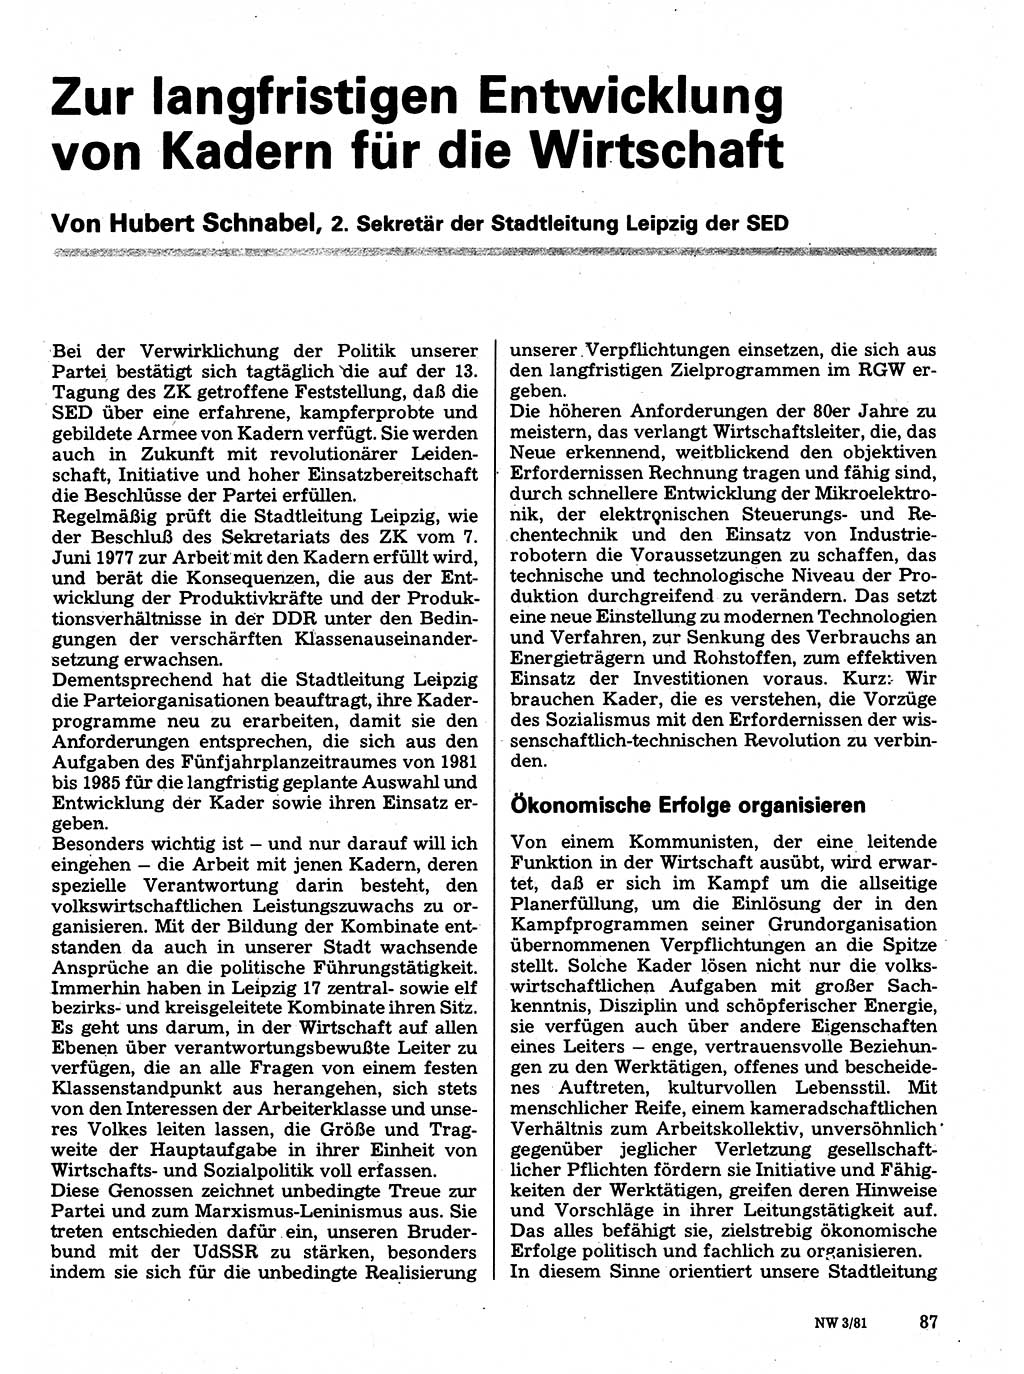 Neuer Weg (NW), Organ des Zentralkomitees (ZK) der SED (Sozialistische Einheitspartei Deutschlands) für Fragen des Parteilebens, 36. Jahrgang [Deutsche Demokratische Republik (DDR)] 1981, Seite 87 (NW ZK SED DDR 1981, S. 87)